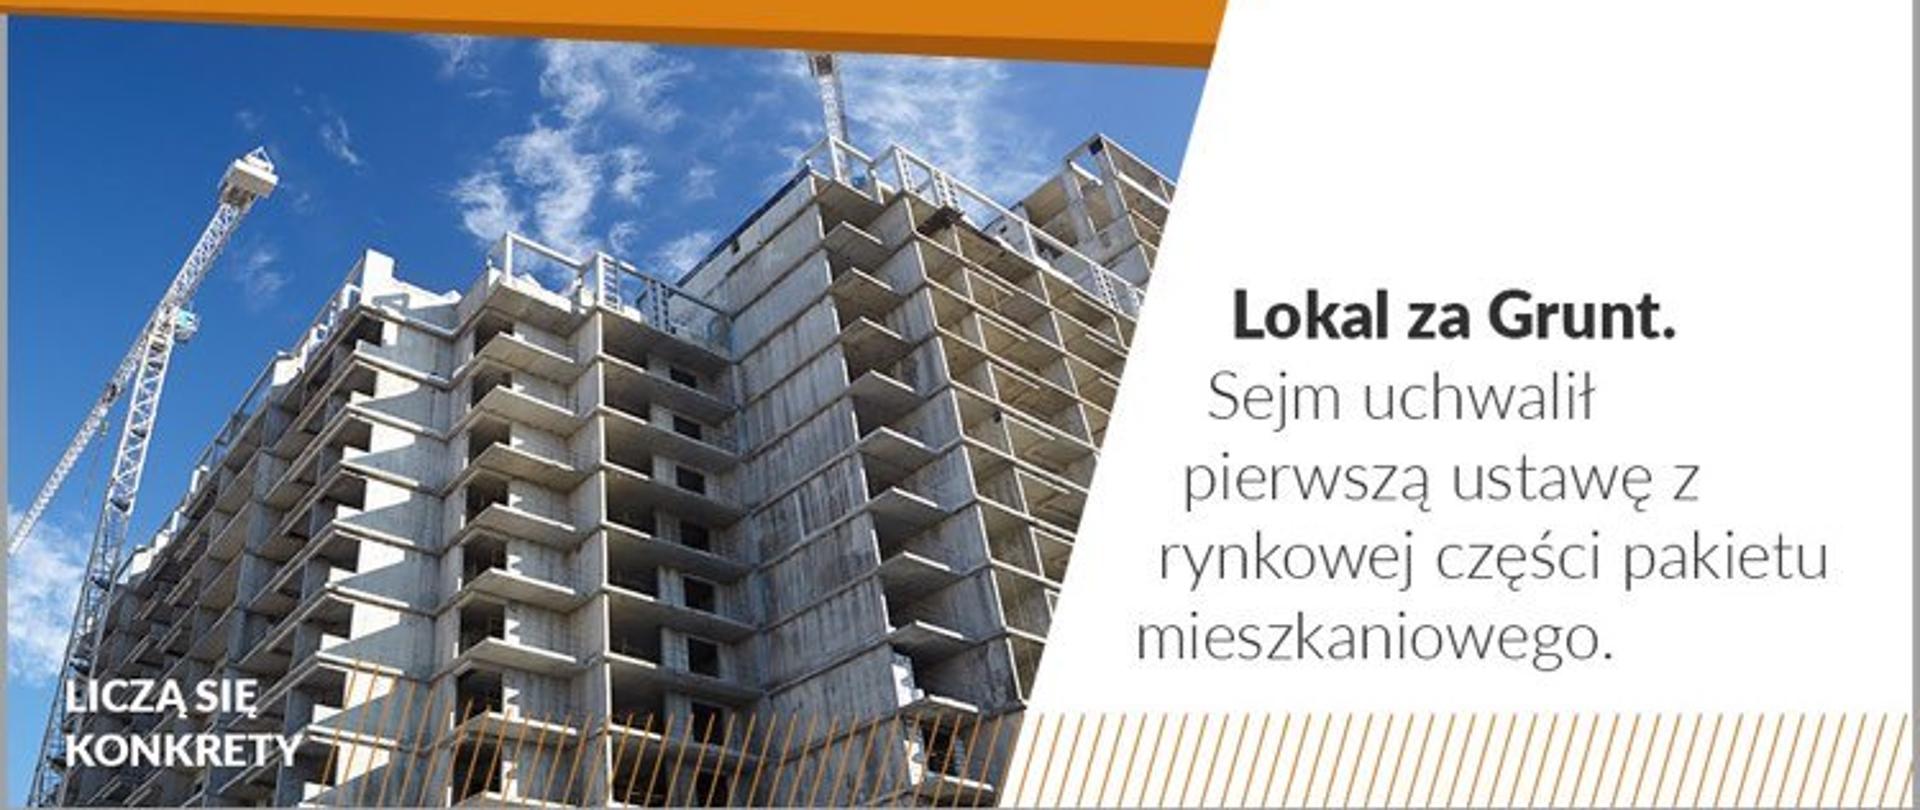 zdjęcie ilustrujące uchwalenie przez Sejm ustawy z części rynkowej pakietu mieszkaniowego